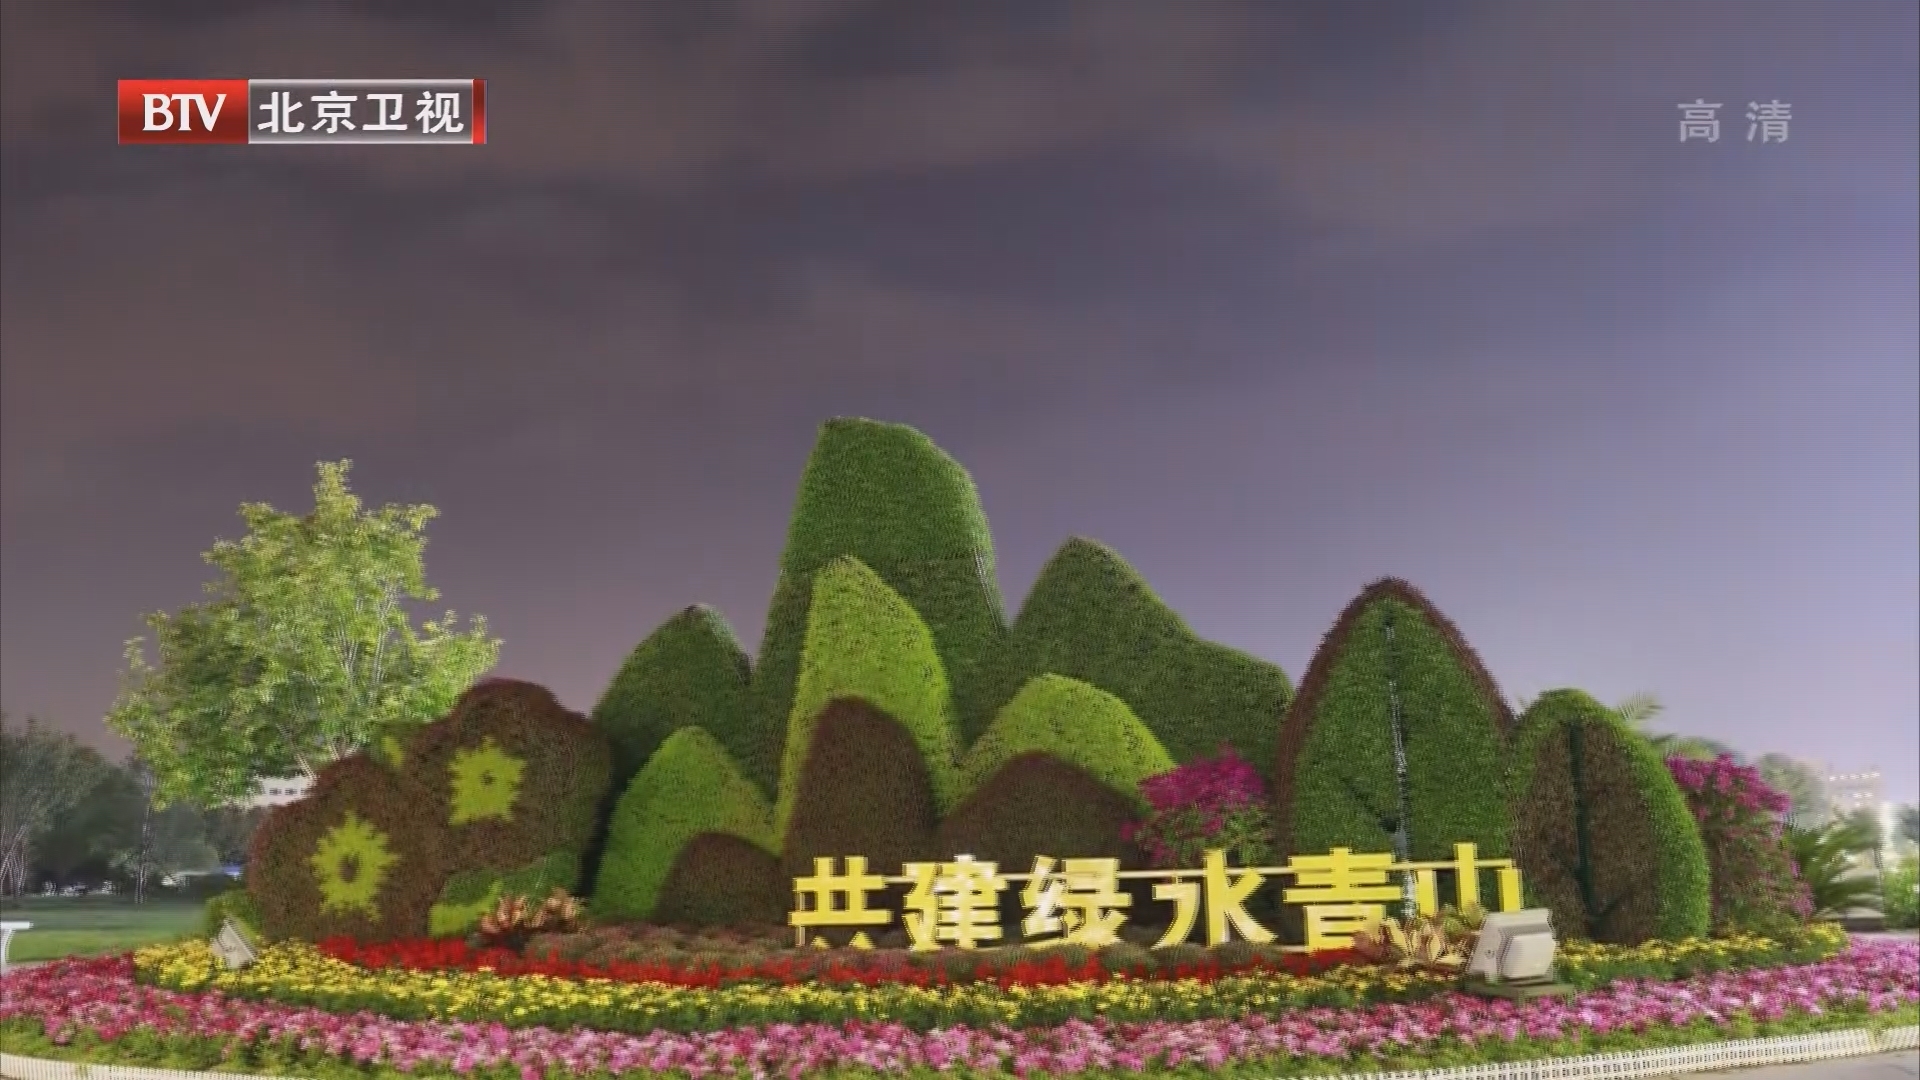 节日之夜 北京11处地标建筑开启“我爱你中国”璀璨灯光秀